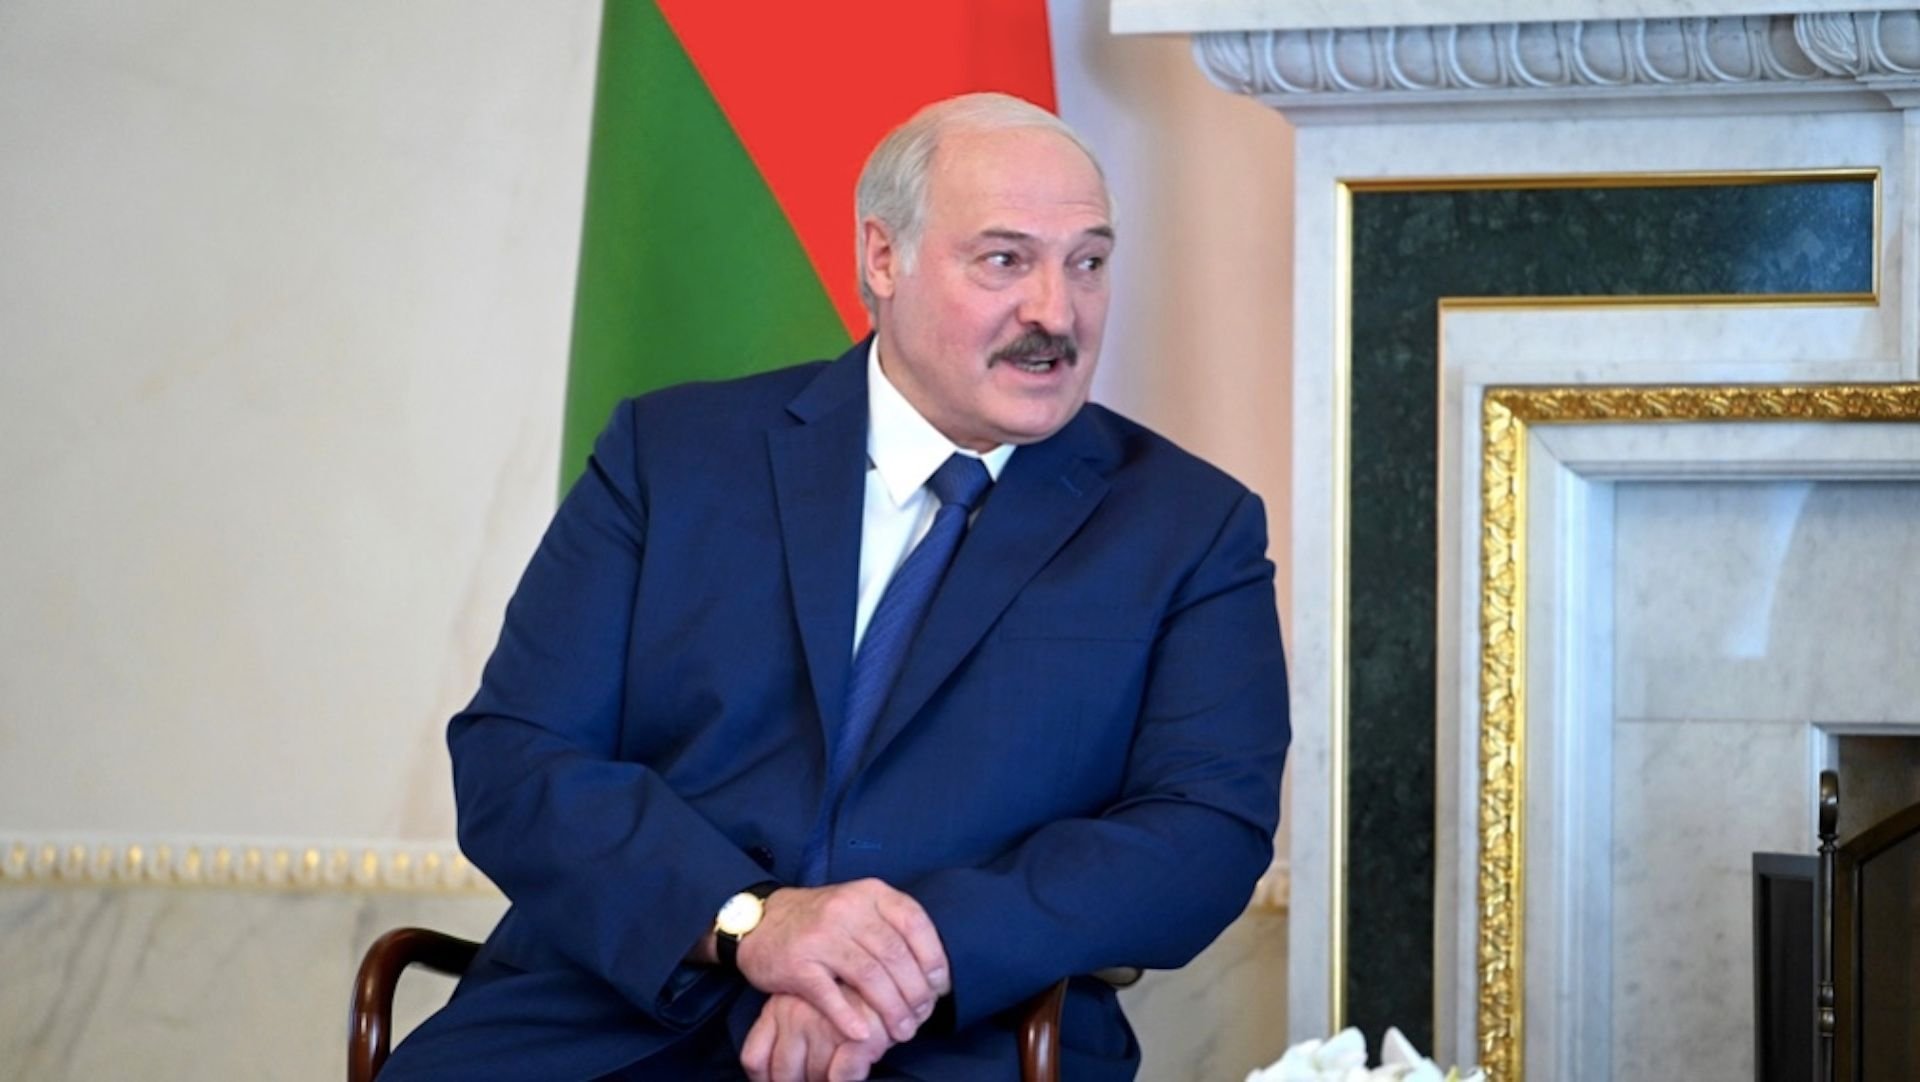 Aleksandr Łukaszenka czeka na odpowiedź ws. 2000 tys. uchodźców. Chce, by UE ich przyjęła